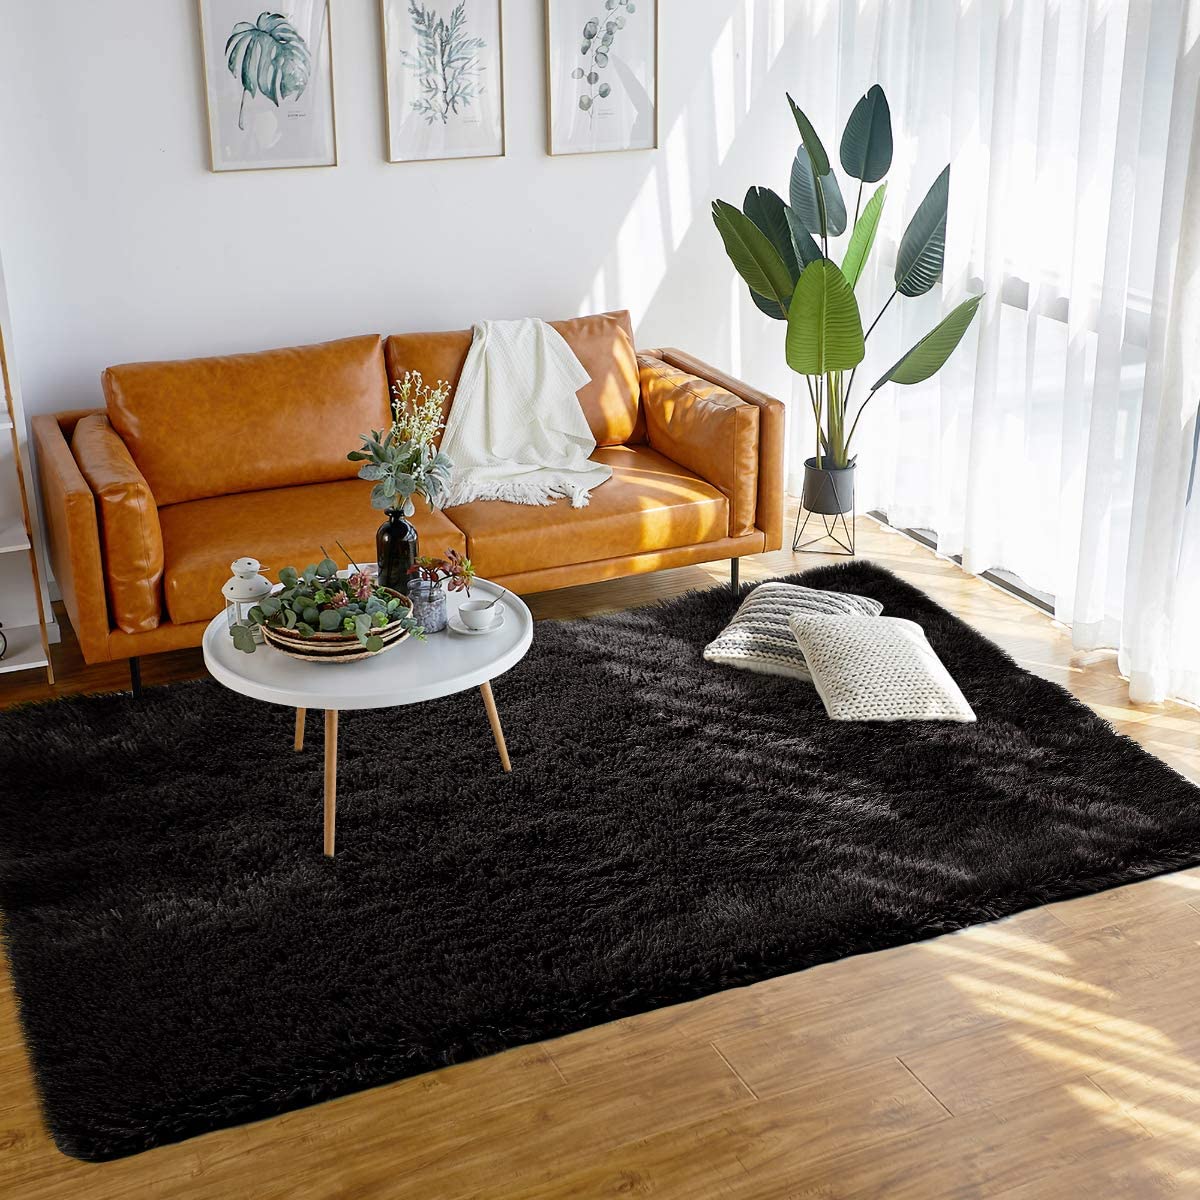 180 x 100 cm Floor Rug Polyester Acrylic Plush Mat for Living Room Plush Rug Children Bed Room Fluffy Floor Carpets